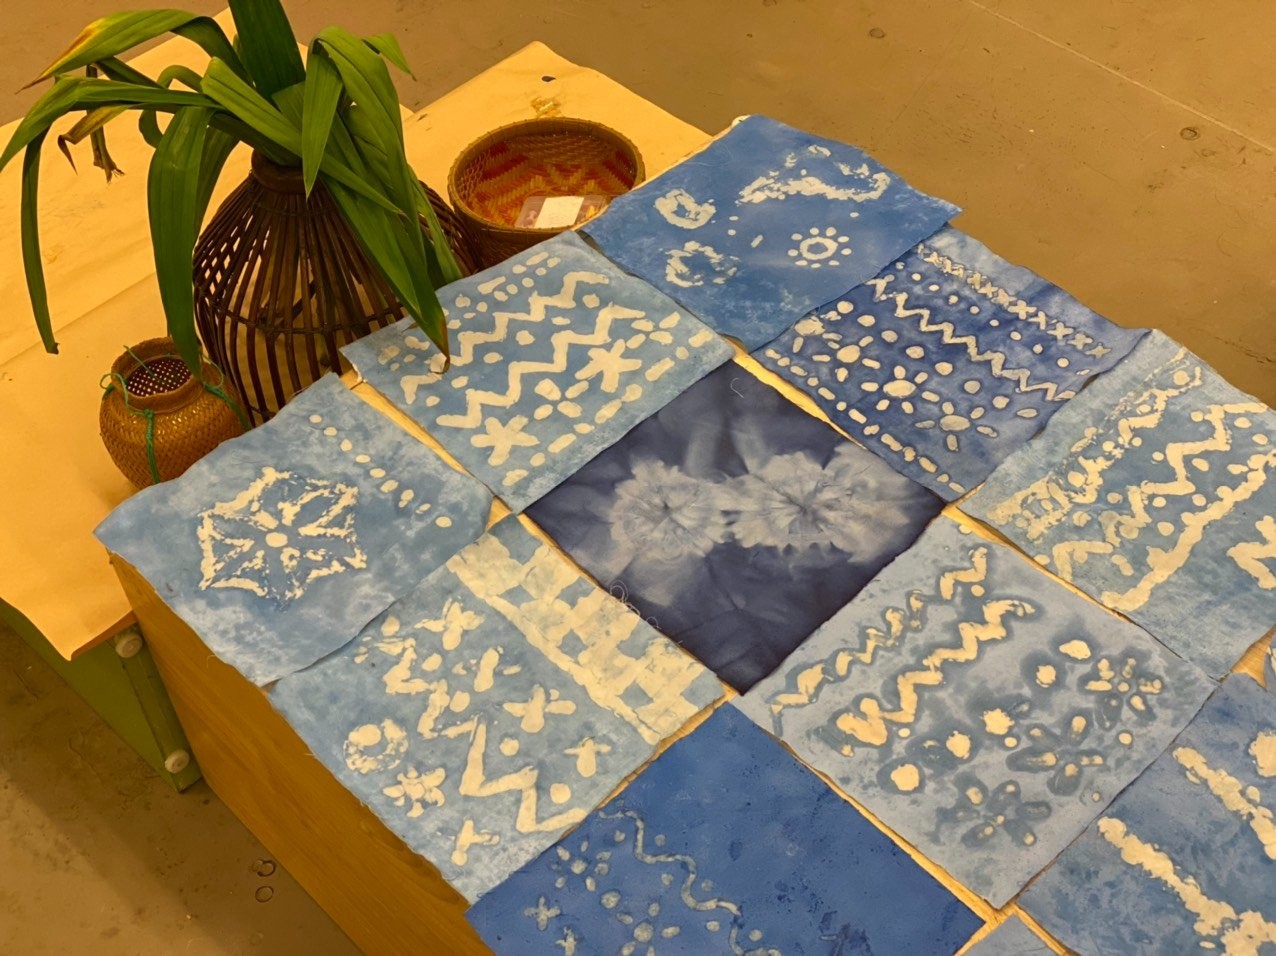 Sản phẩm nhuộm Batik của các bạn học sinh. Ảnh: Bảo tàng Phụ nữ Việt Nam